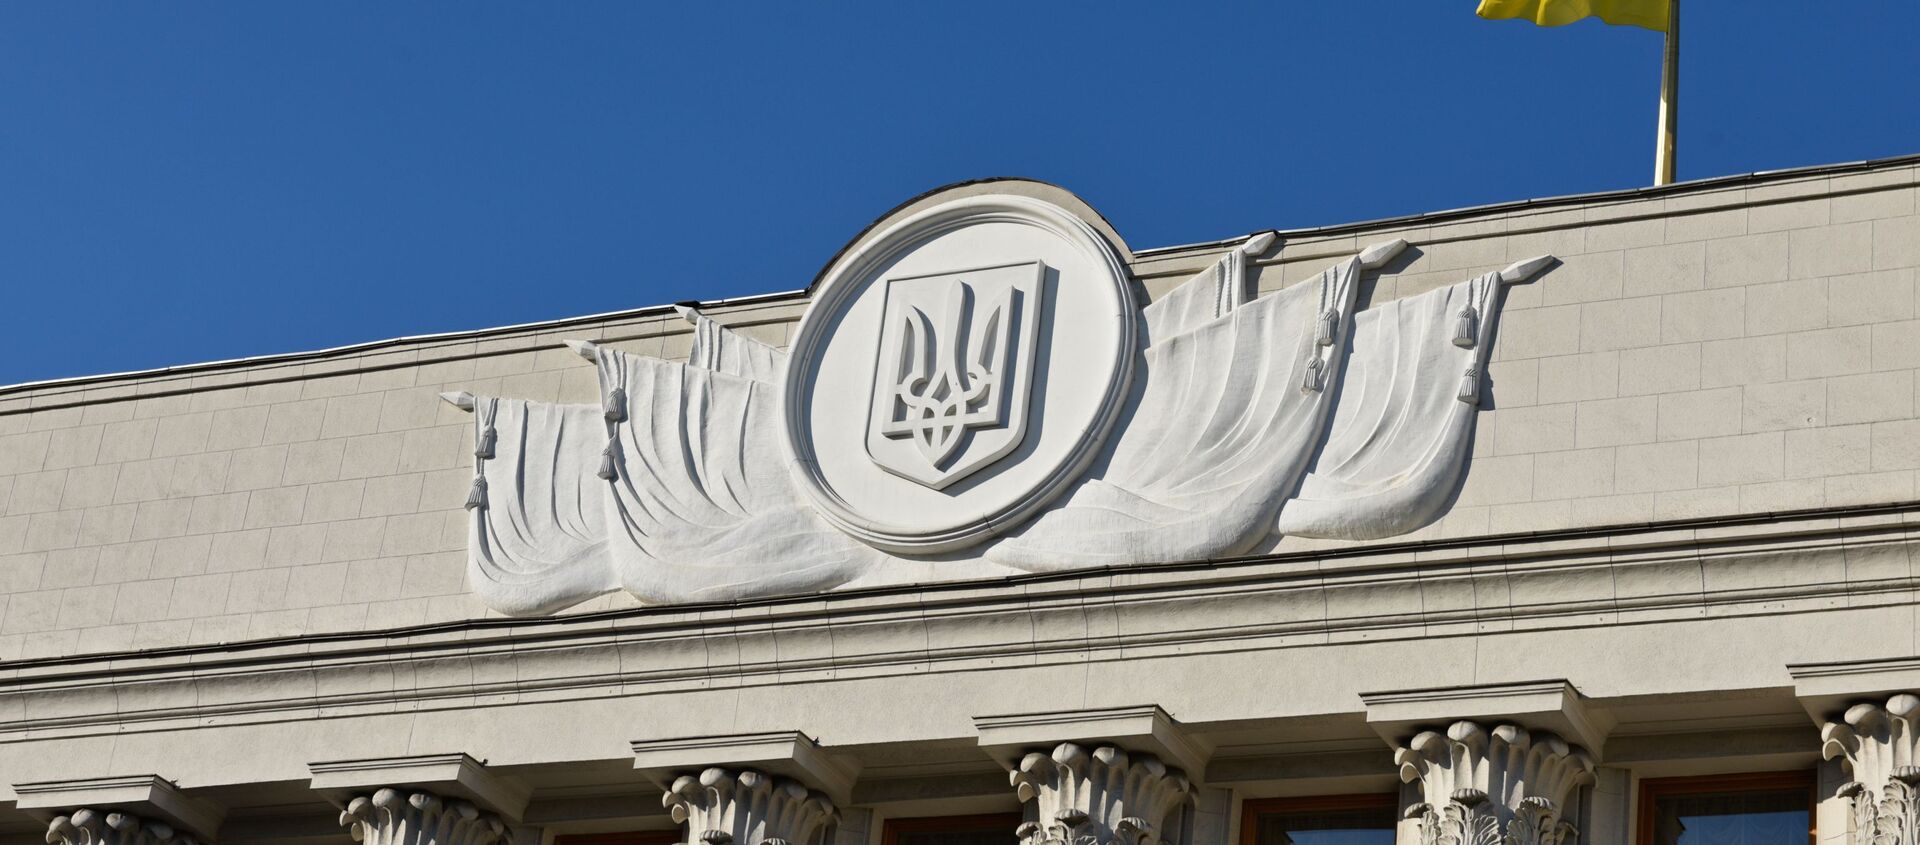 Фрагмент здания Верховной рады Украины в Киеве - Sputnik Узбекистан, 1920, 21.12.2020